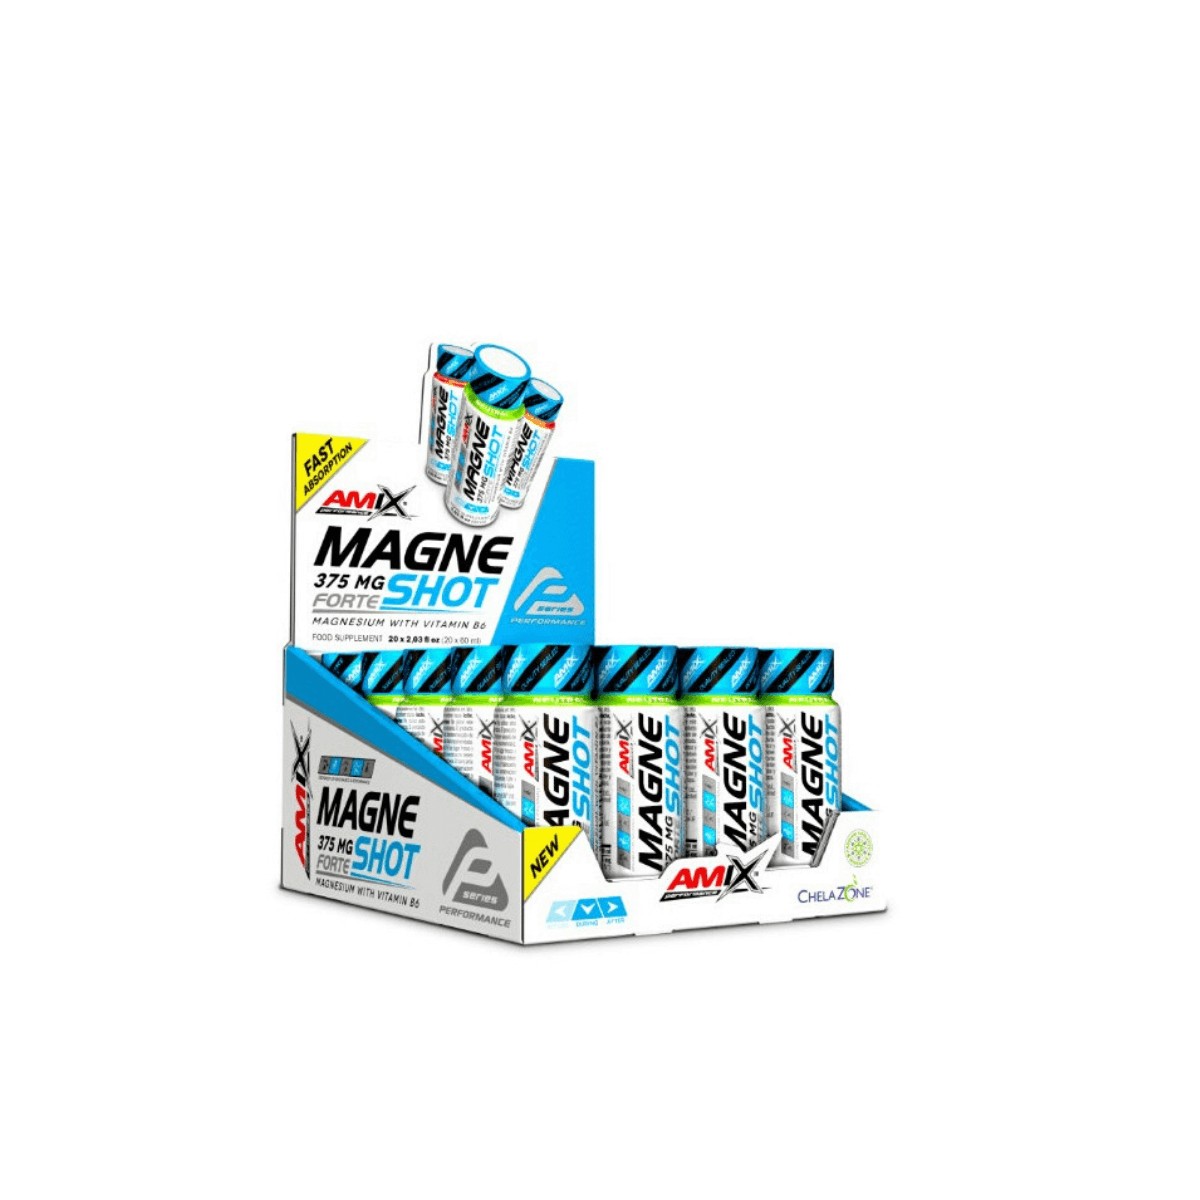 Go Pro günstig Kaufen-AMIX MagneShot Forte Mango 375 MG 20x60ML. AMIX MagneShot Forte Mango 375 MG 20x60ML <![CDATA[AMIX MagneShot Forte Mango 375 MG 20x60ML AMIX Performance MagneShot Forte 375 mg ist ein neues Produkt AMIX PERFORMANCE, ein ultrakonzentriertes Magnesium, das 